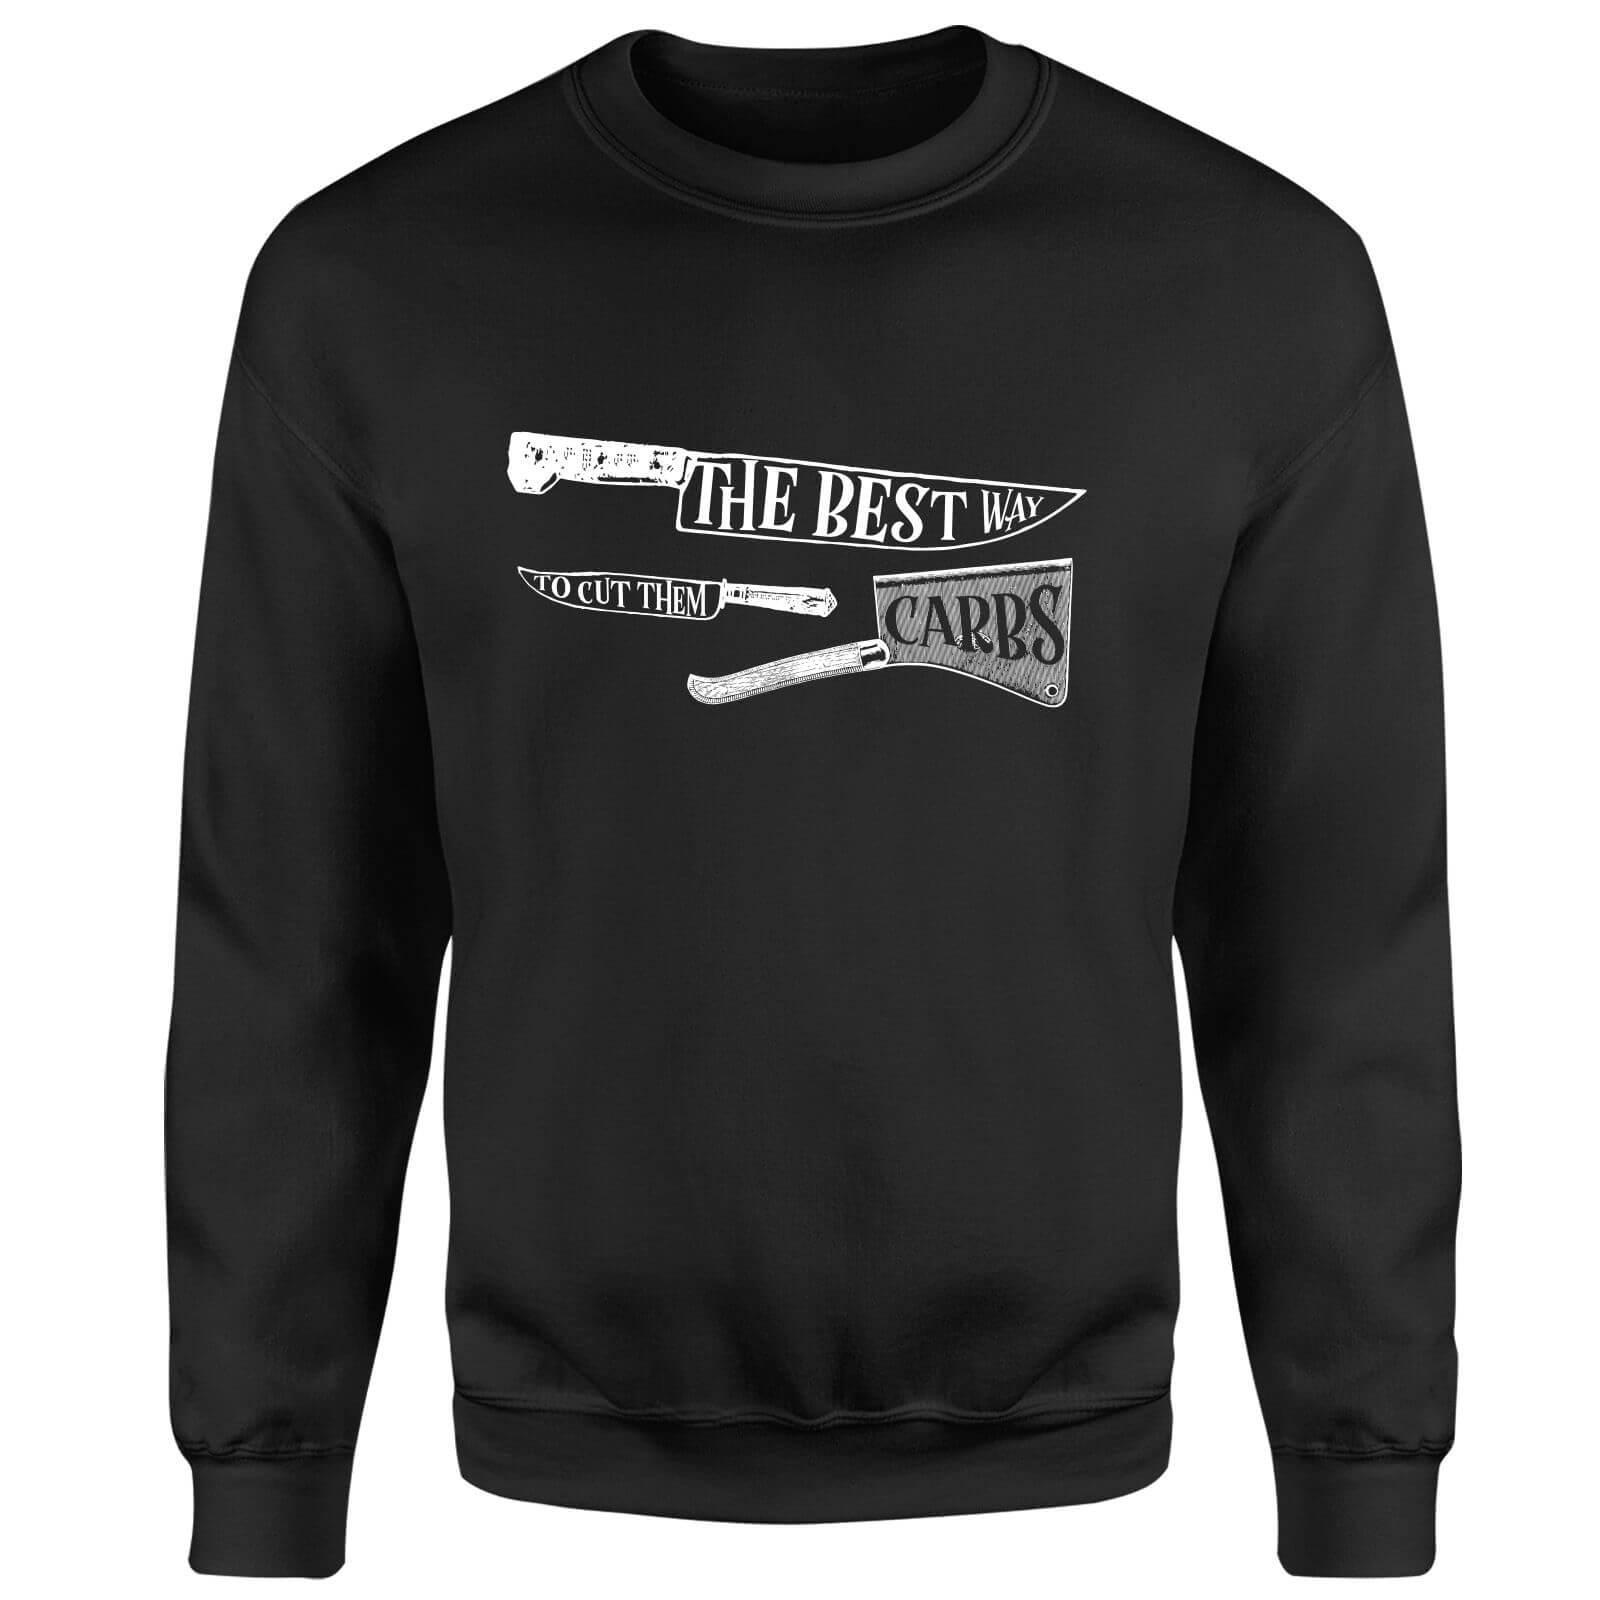 The Best Way To Cut Them Carbs Sweatshirt - Black - XXL - Black